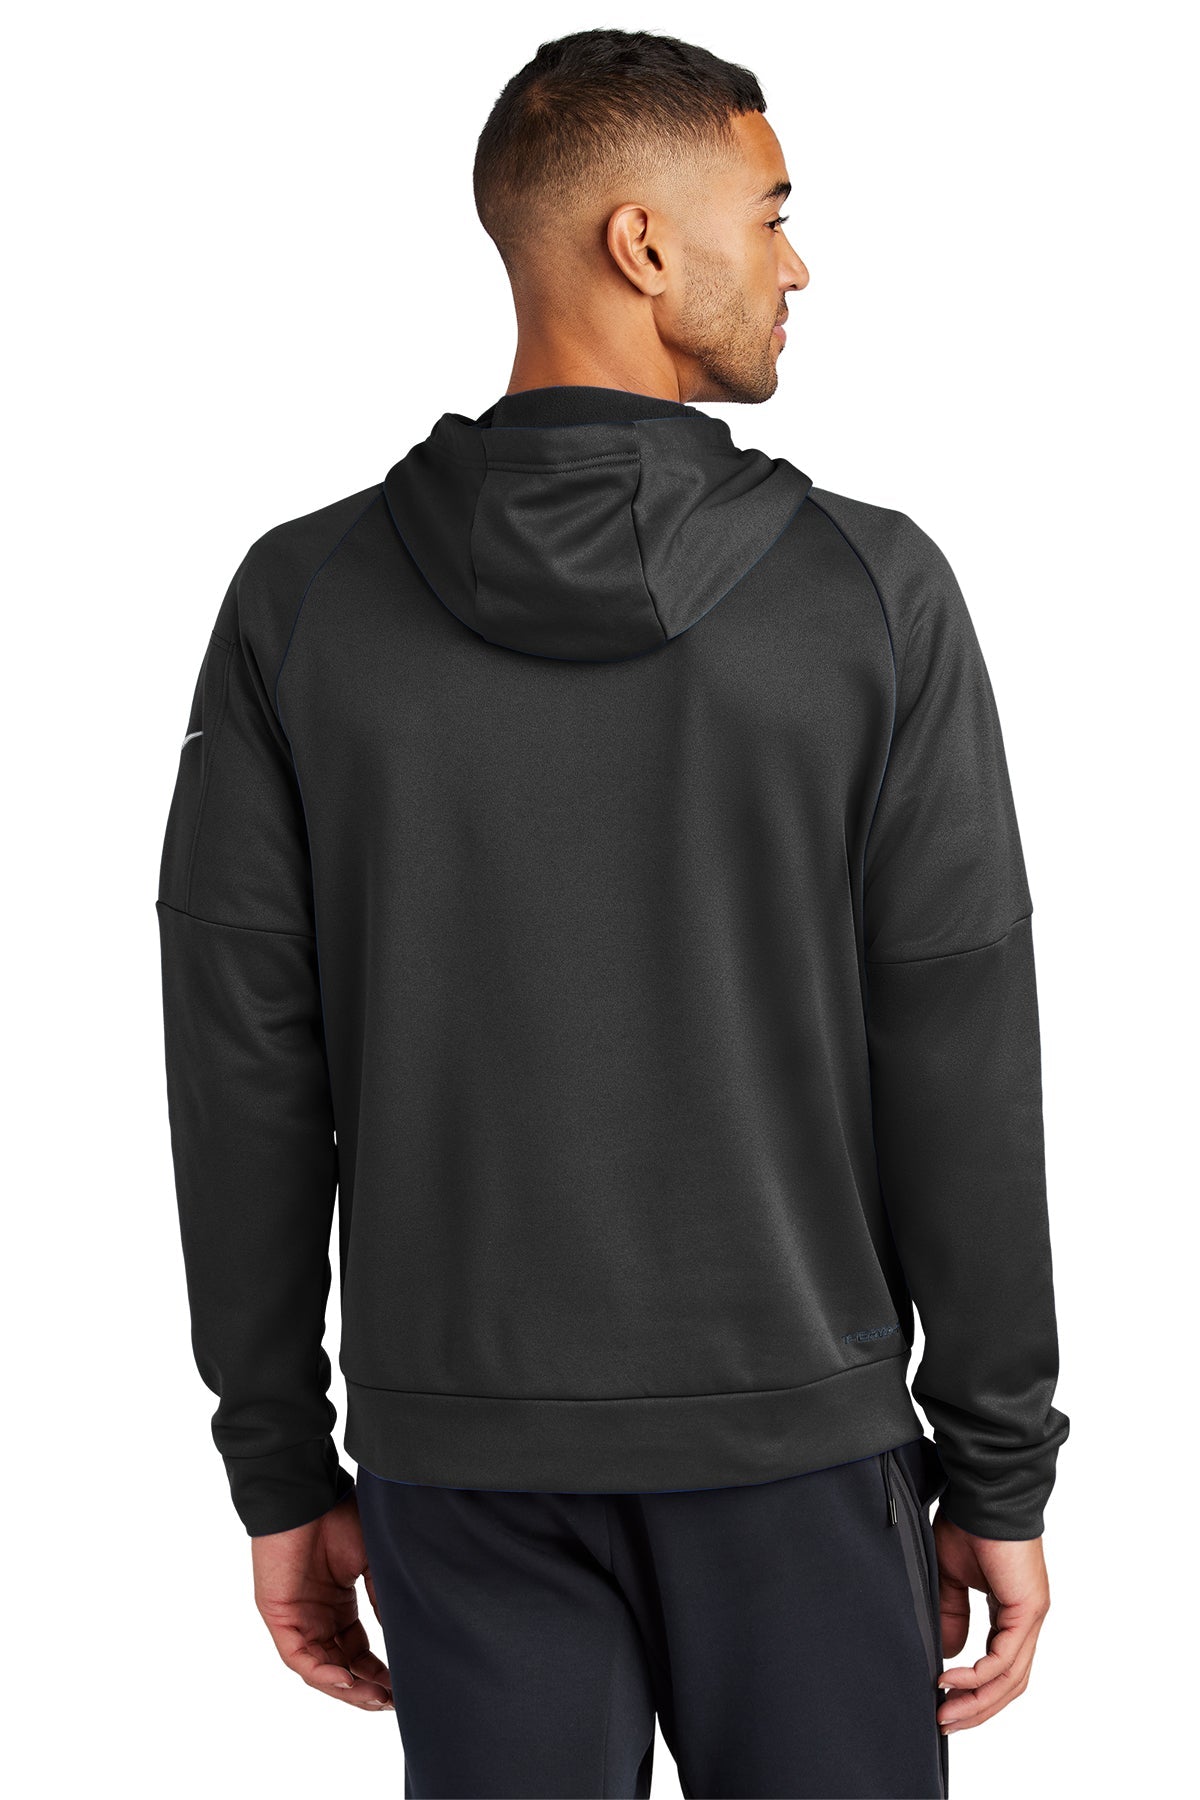 Nike Therma-FIT Pocket Fleece Custom Hoodies, Black